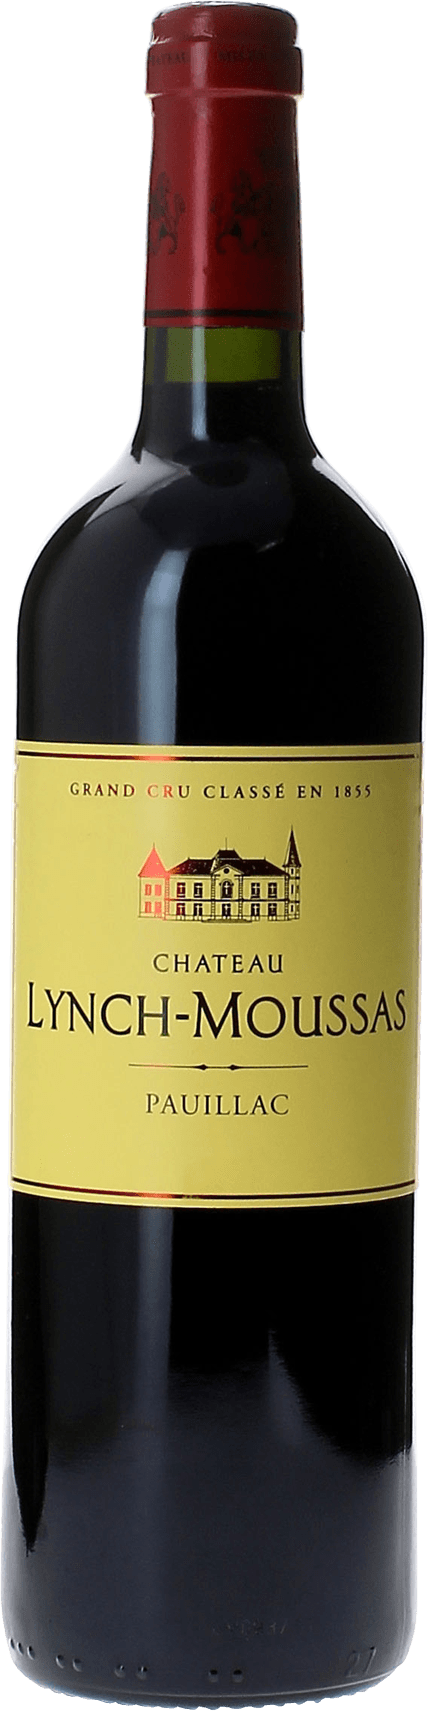 Lynch moussas 2009 5 me Grand cru class Pauillac, Bordeaux rouge